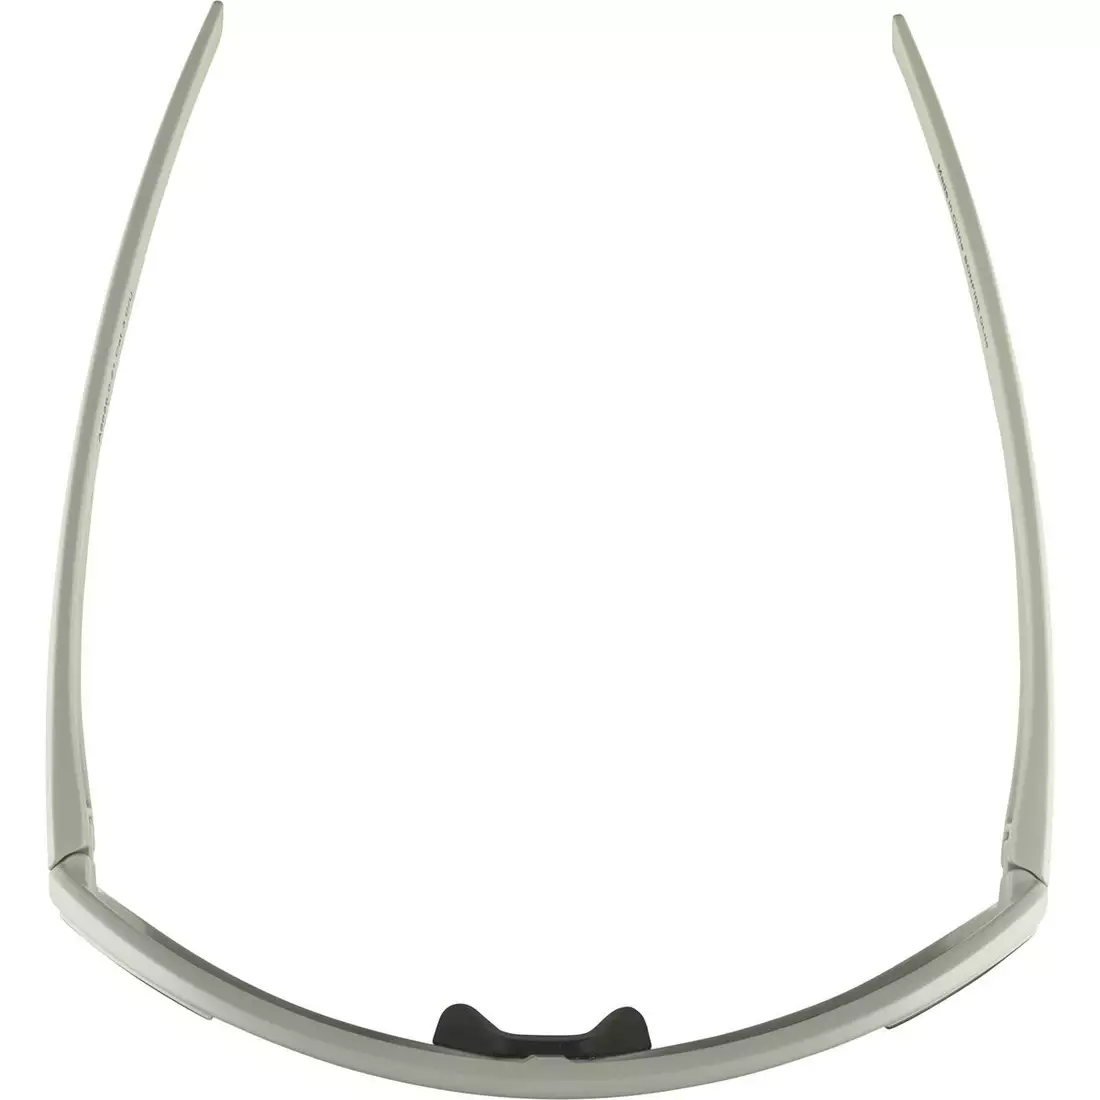 ALPINA BONFIRE Q-LITE Polarizált sportszemüveg, cool grey matt / silver mirror